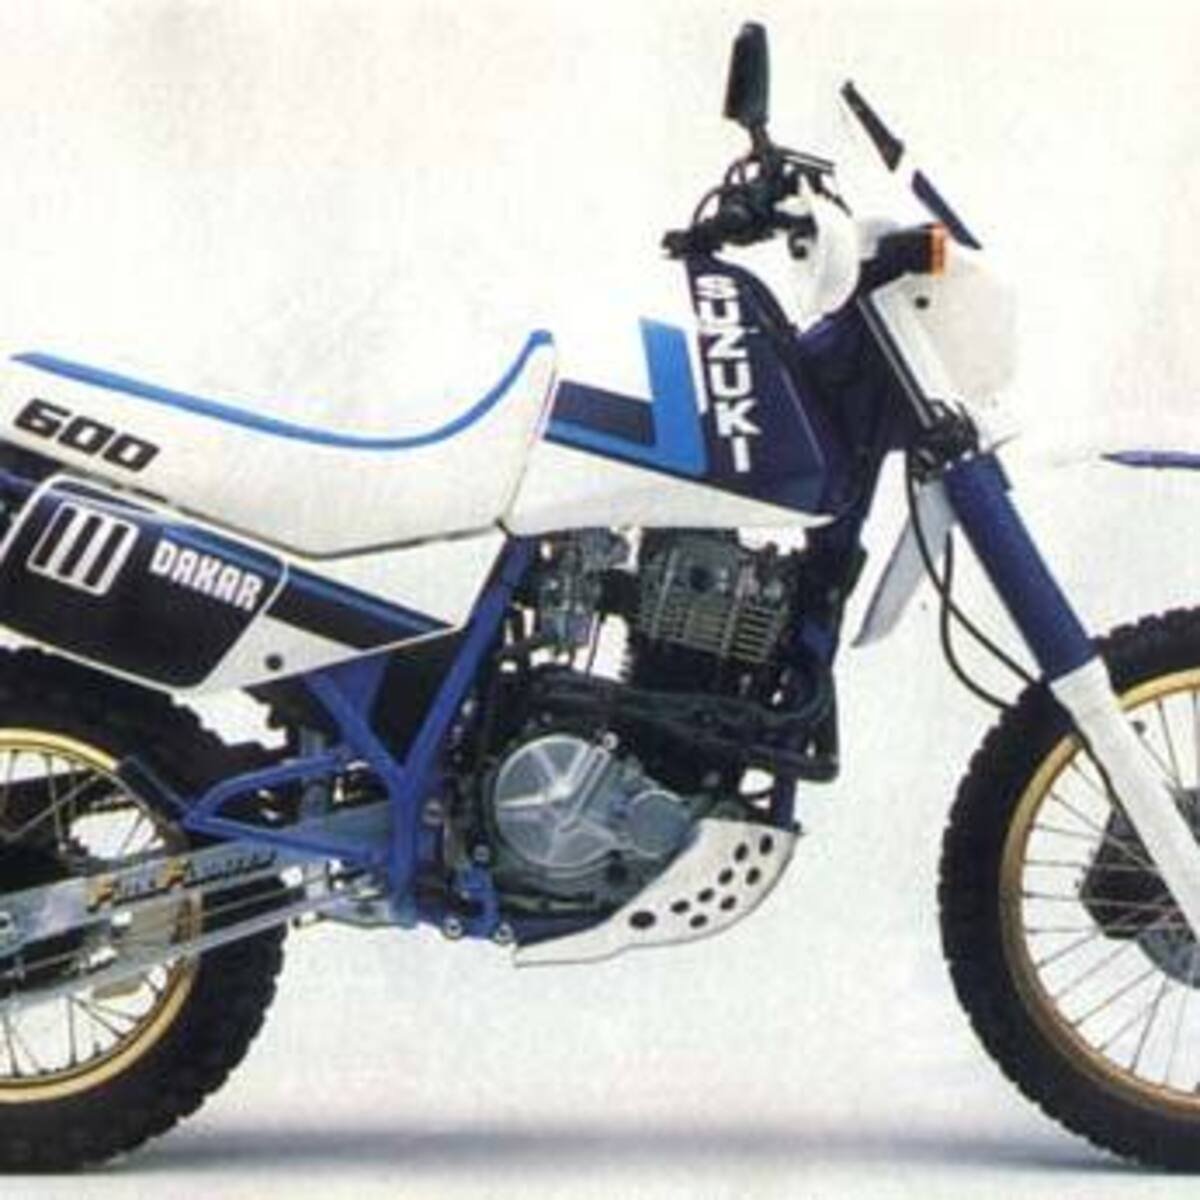 Suzuki DR 600 R (1985 - 87)